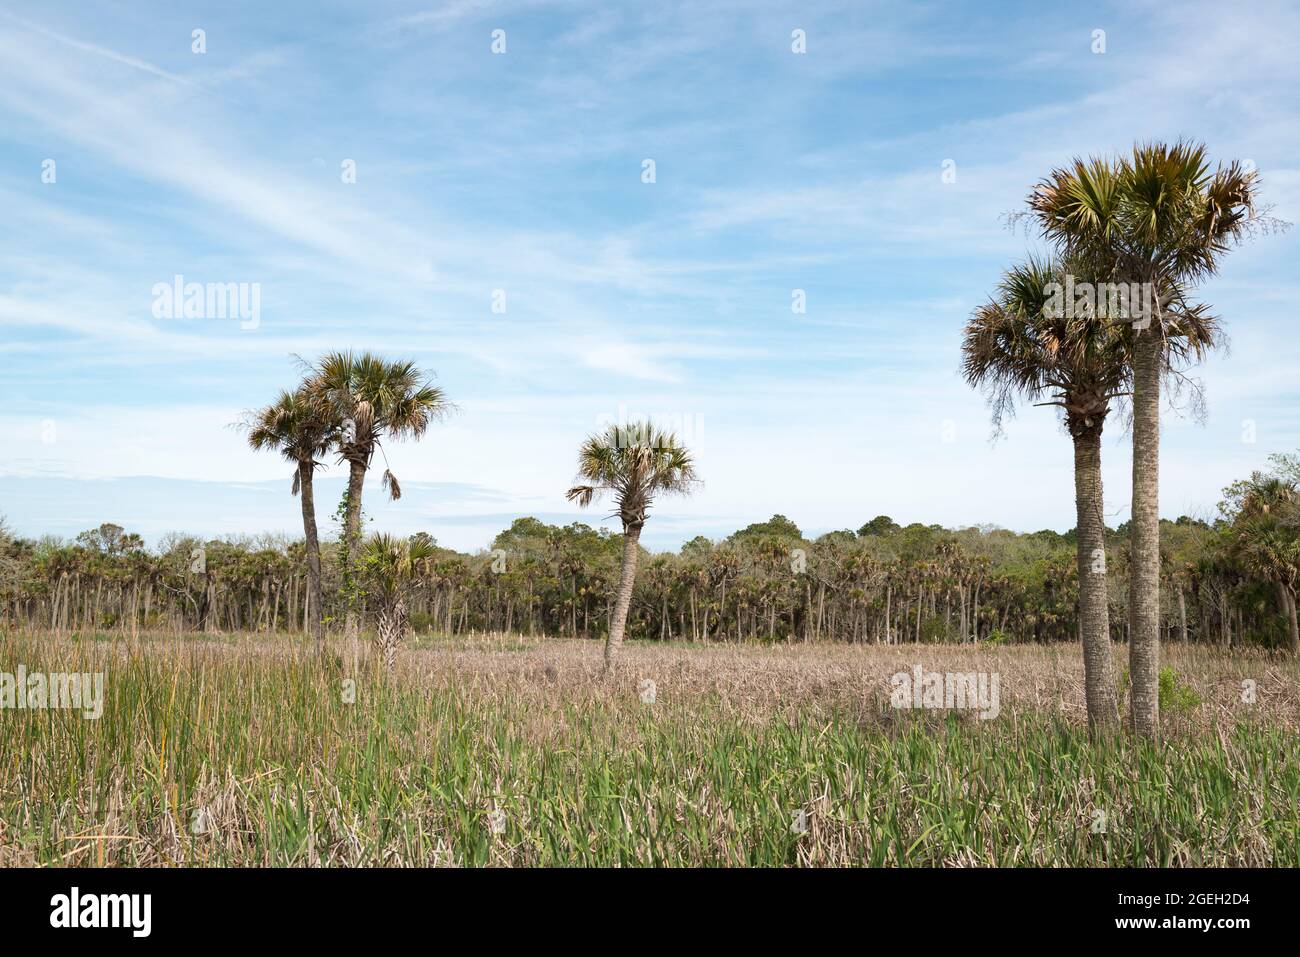 Bull Island off the coast of South Carolina near Charleston, USA Stock Photo